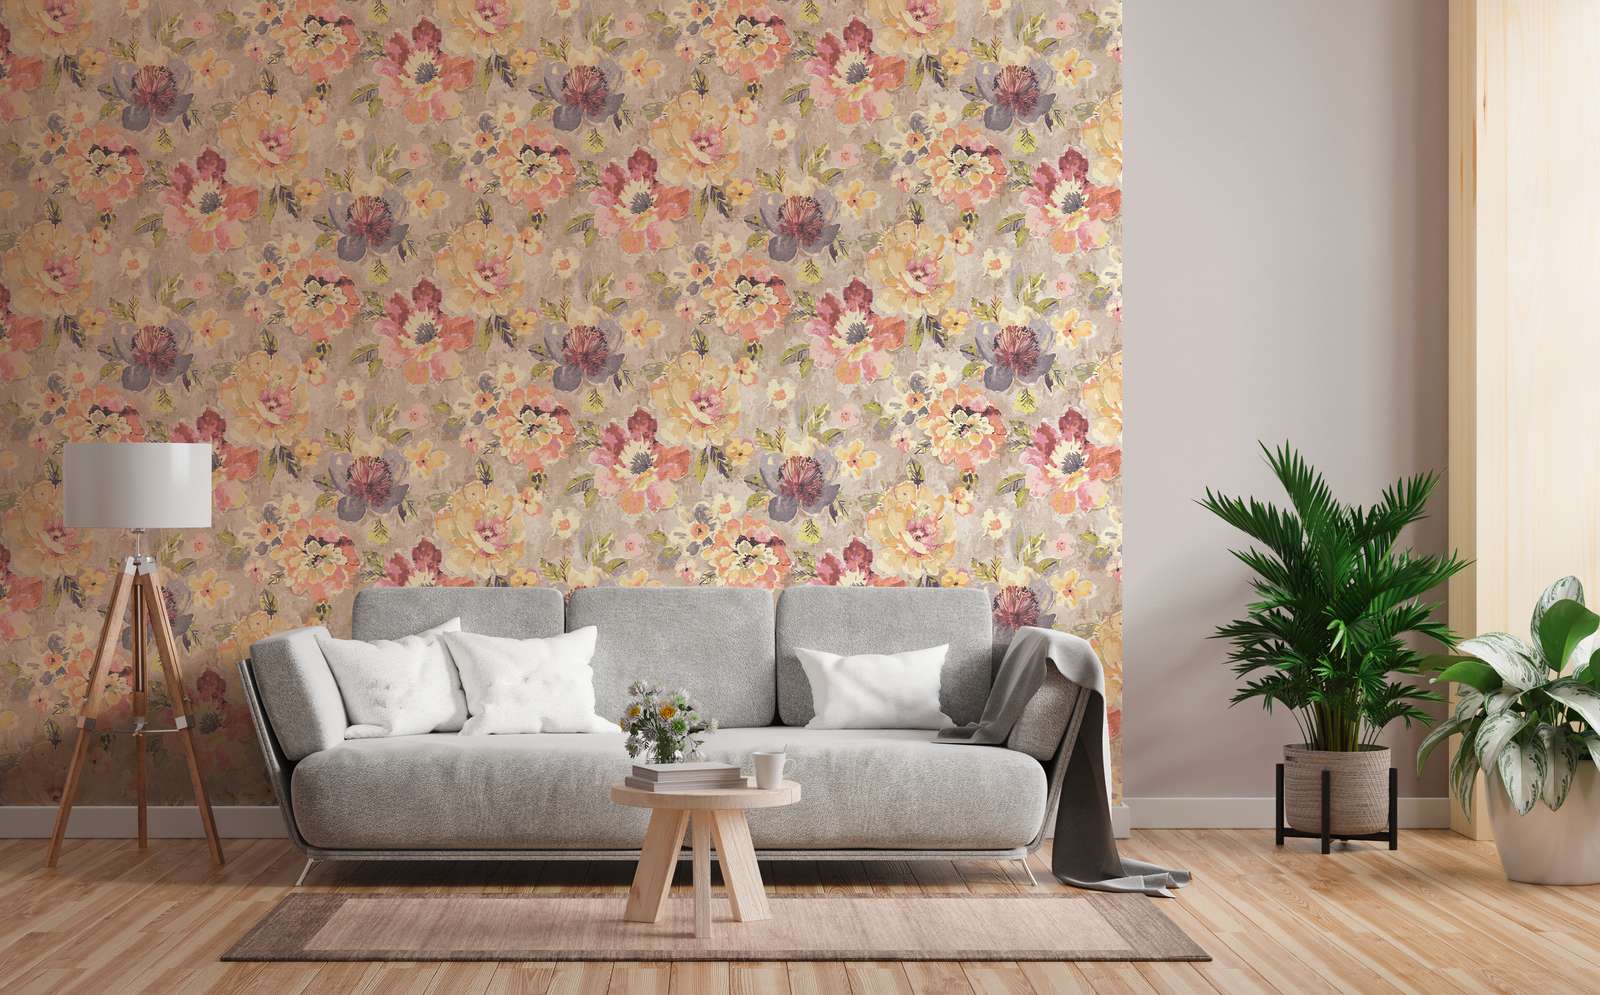             Blumen-Vliestapete im Aquarell- und Vintagelook – Bunt, Grau, Pink
        